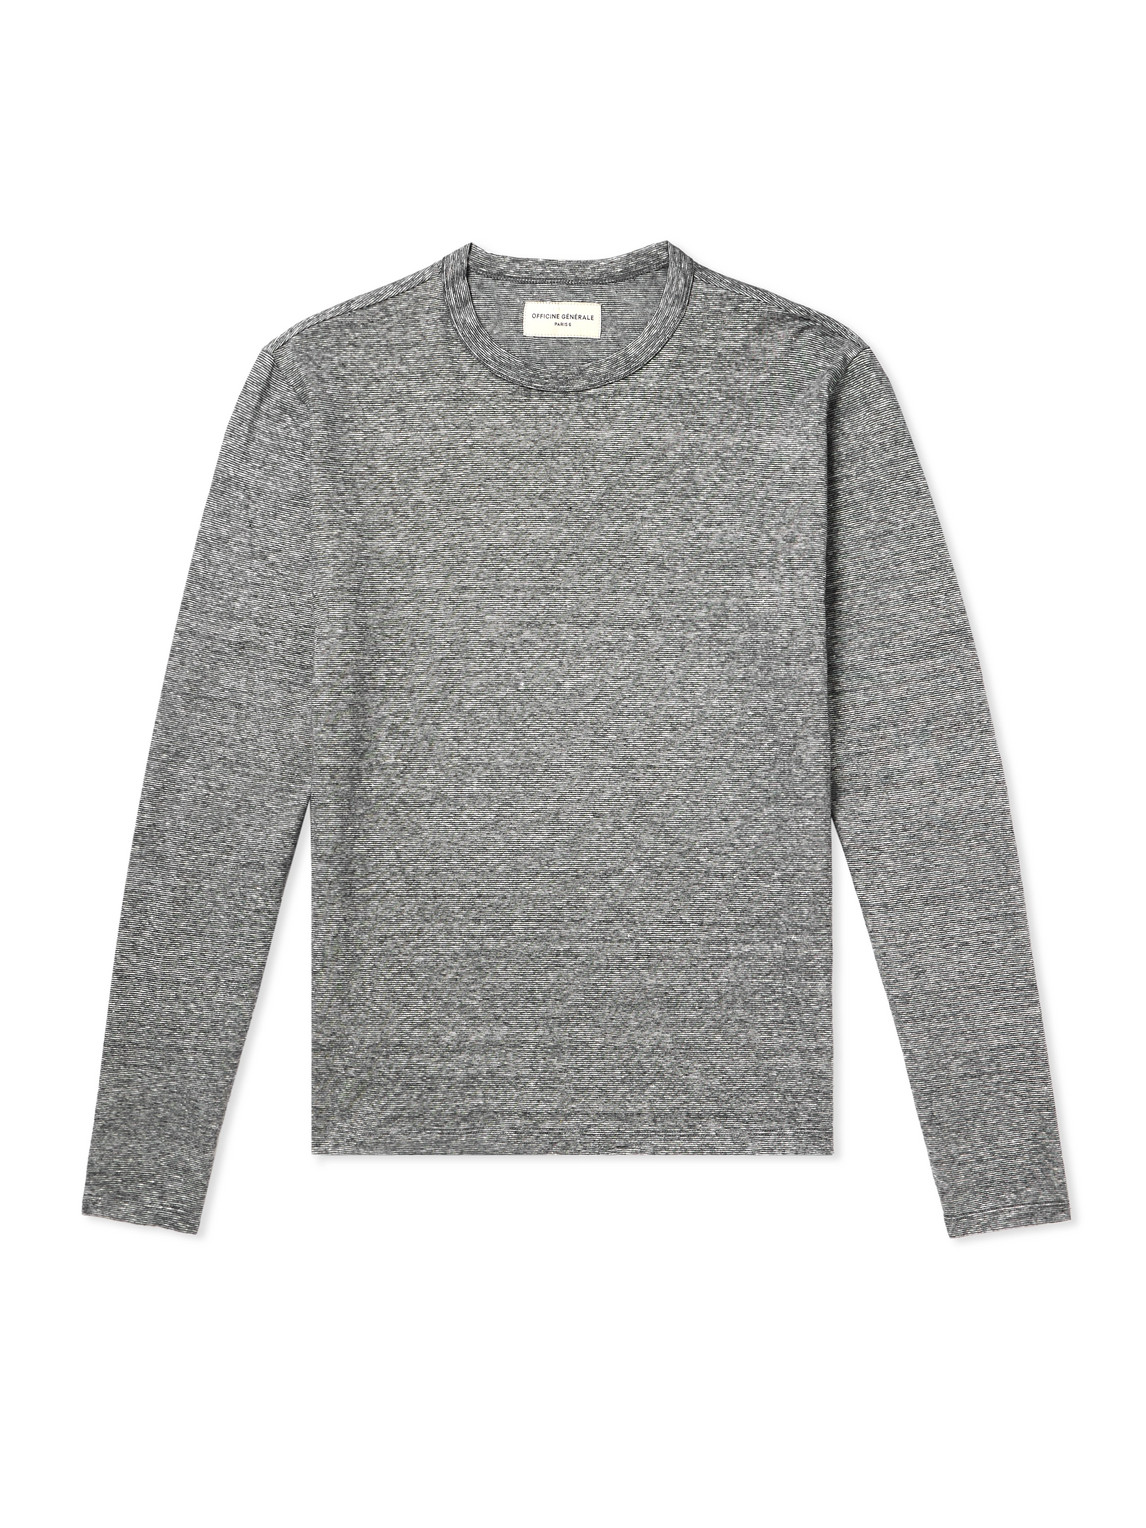 Officine Générale - Striped Cotton and Linen-Blend T-Shirt - Men - Gray - L von Officine Générale